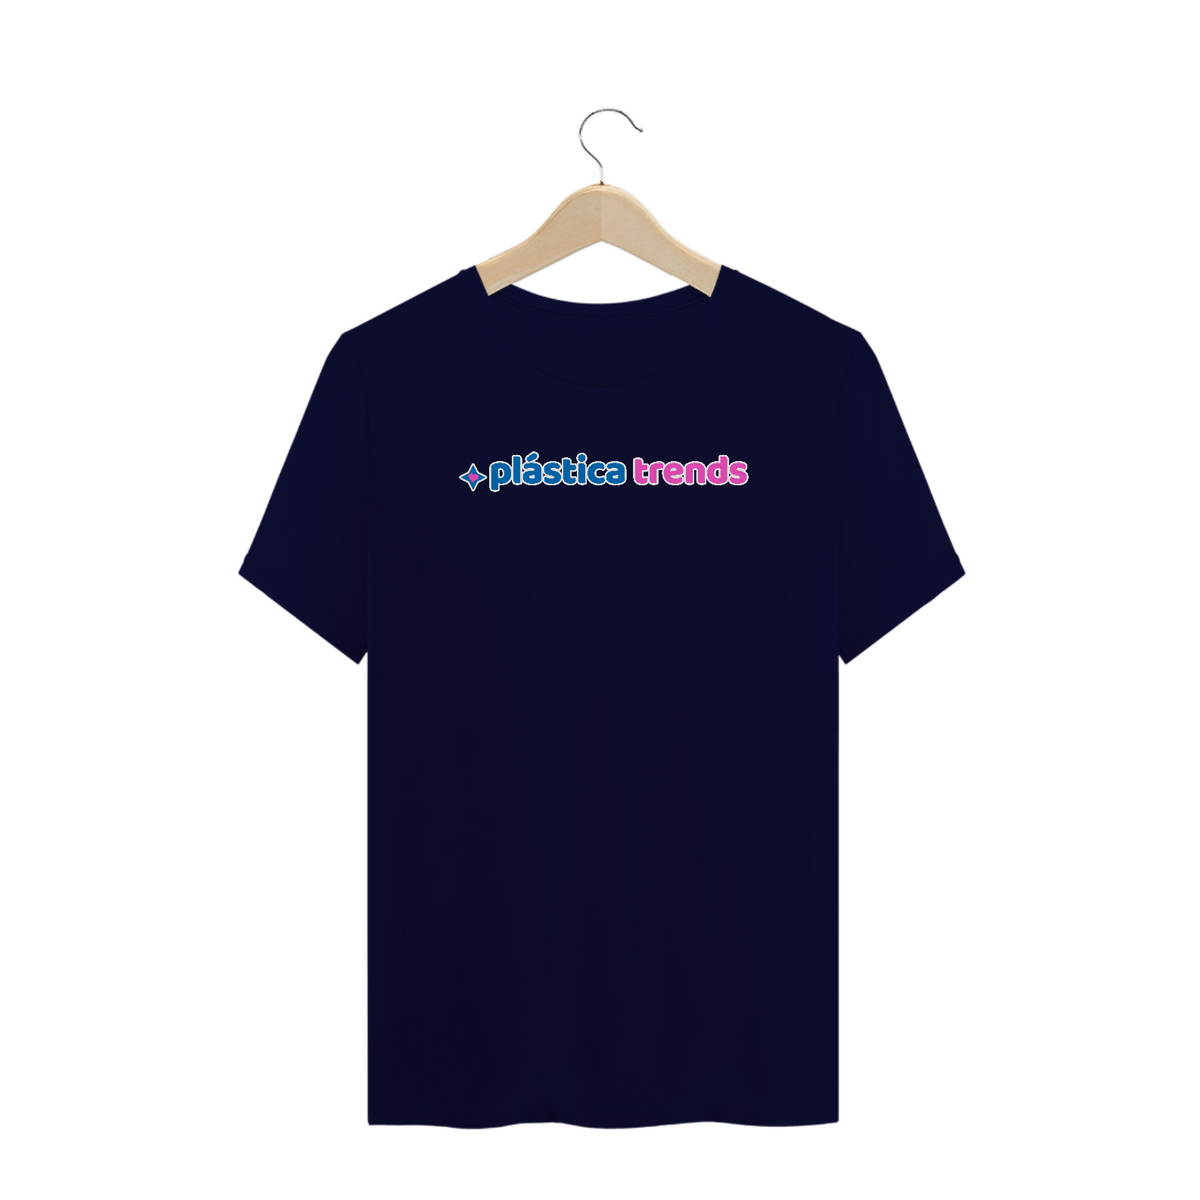 Nome do produto: T-Shirt Prime Plus Size Cores - Plástica Trends